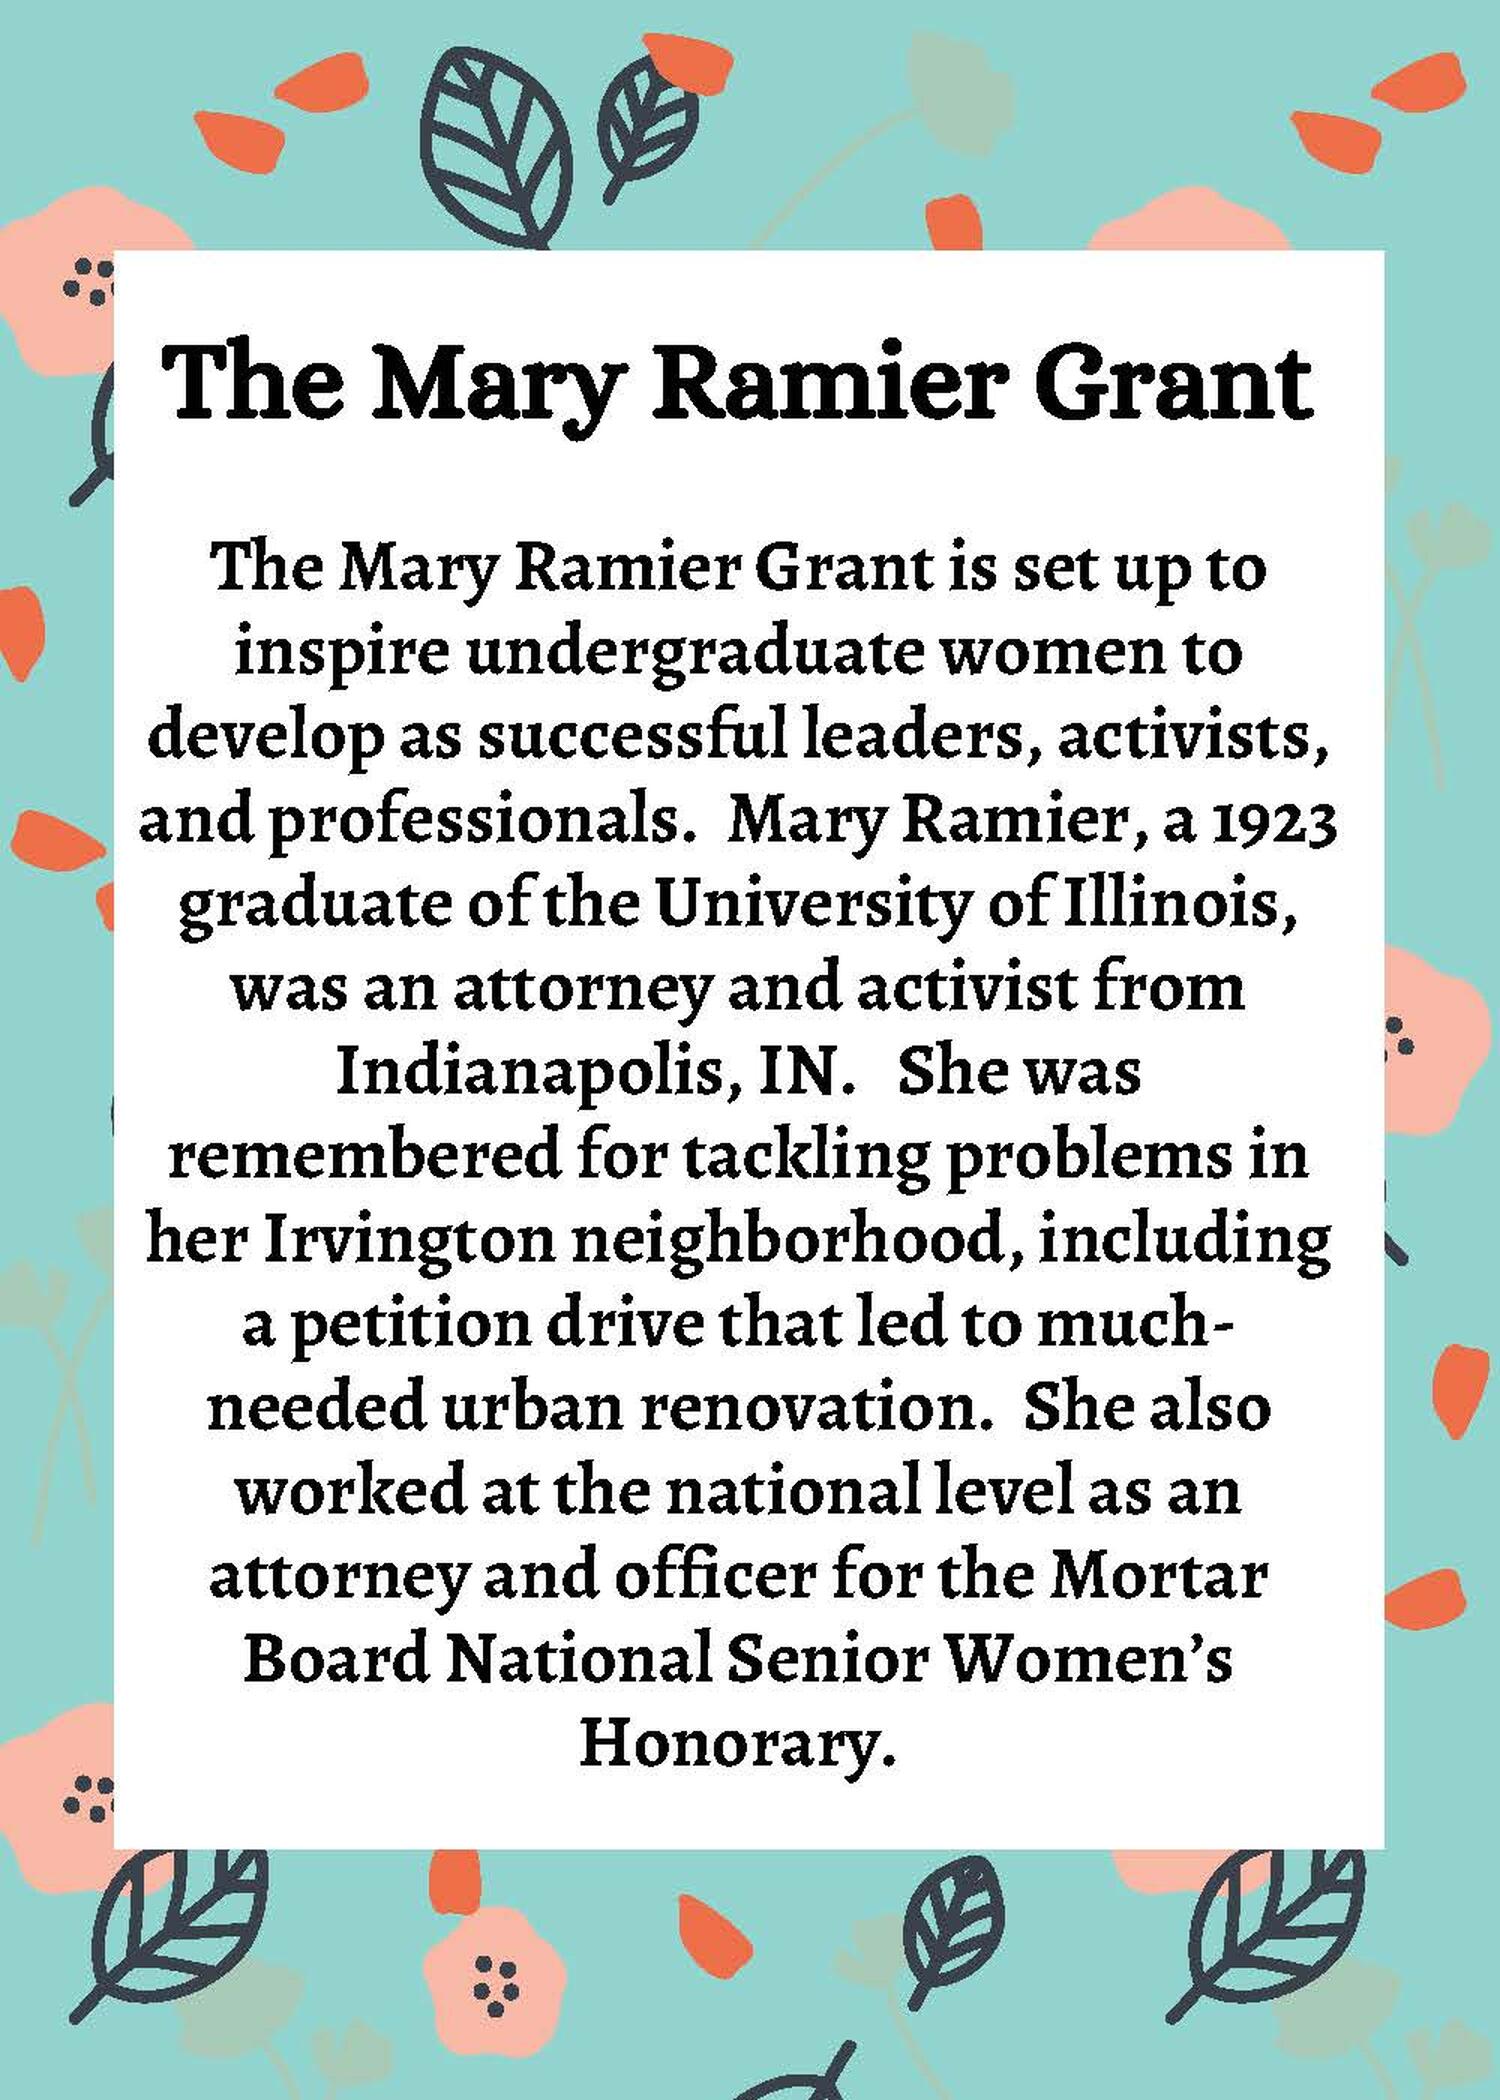 Description of Mary Ramier